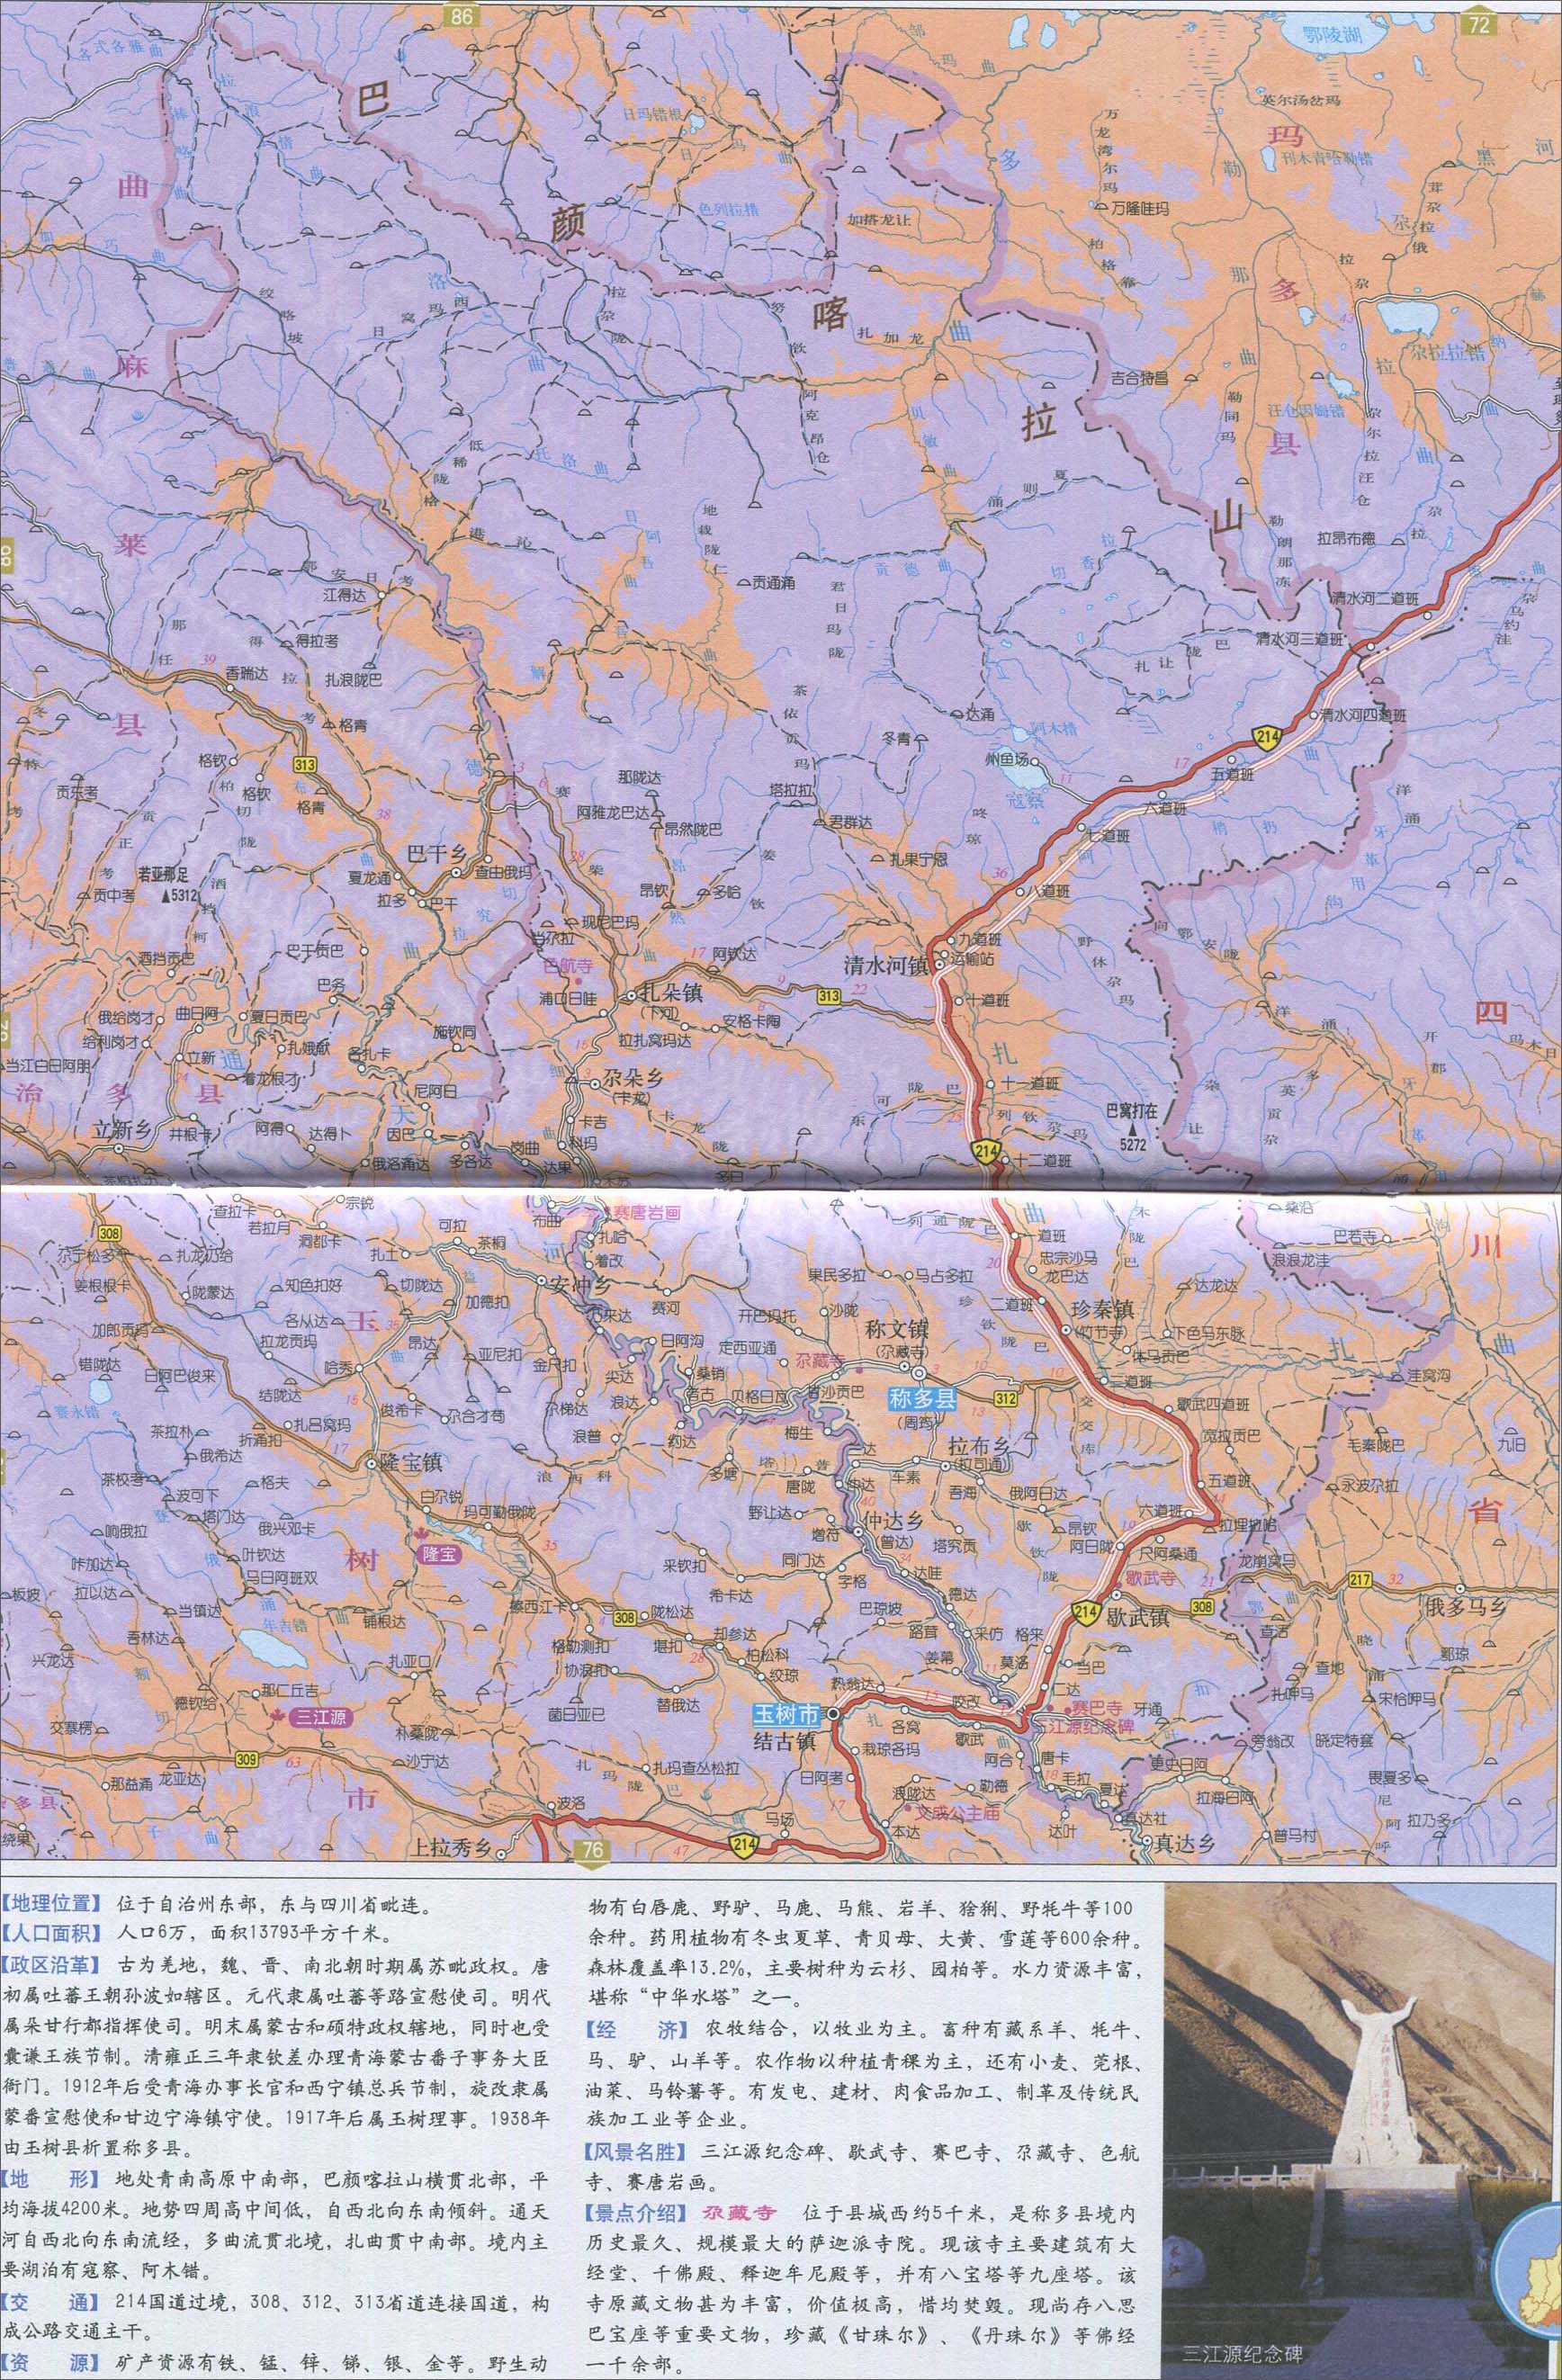 小编位各位地理科考生和老师整理2014年的称多县地图,所处省份:玉树州图片